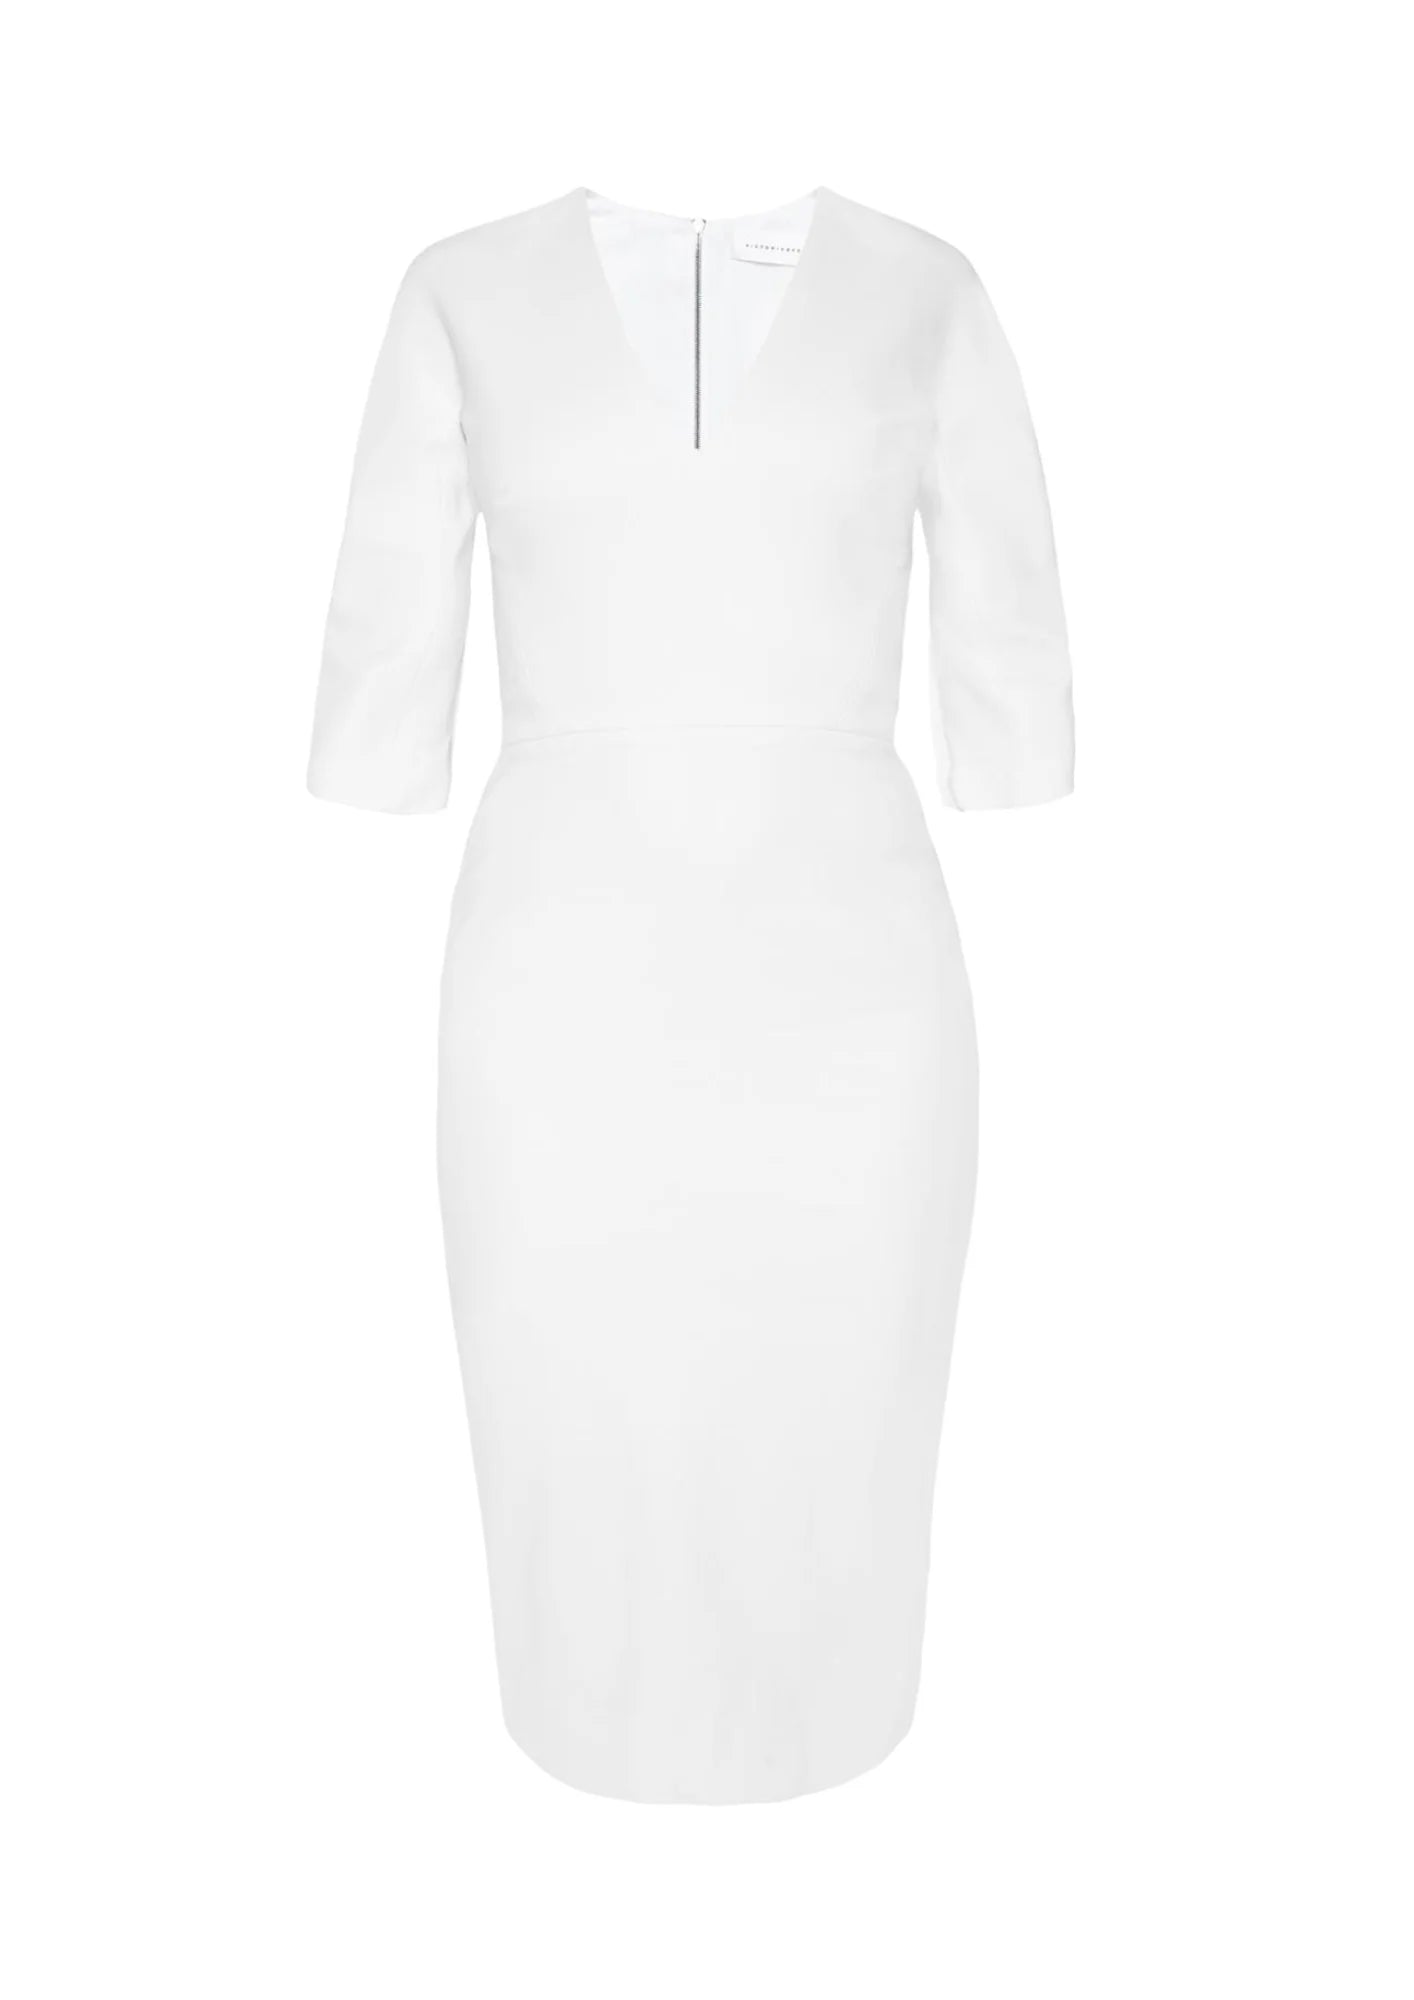 WHITE V-NECK SHEATH DRESS